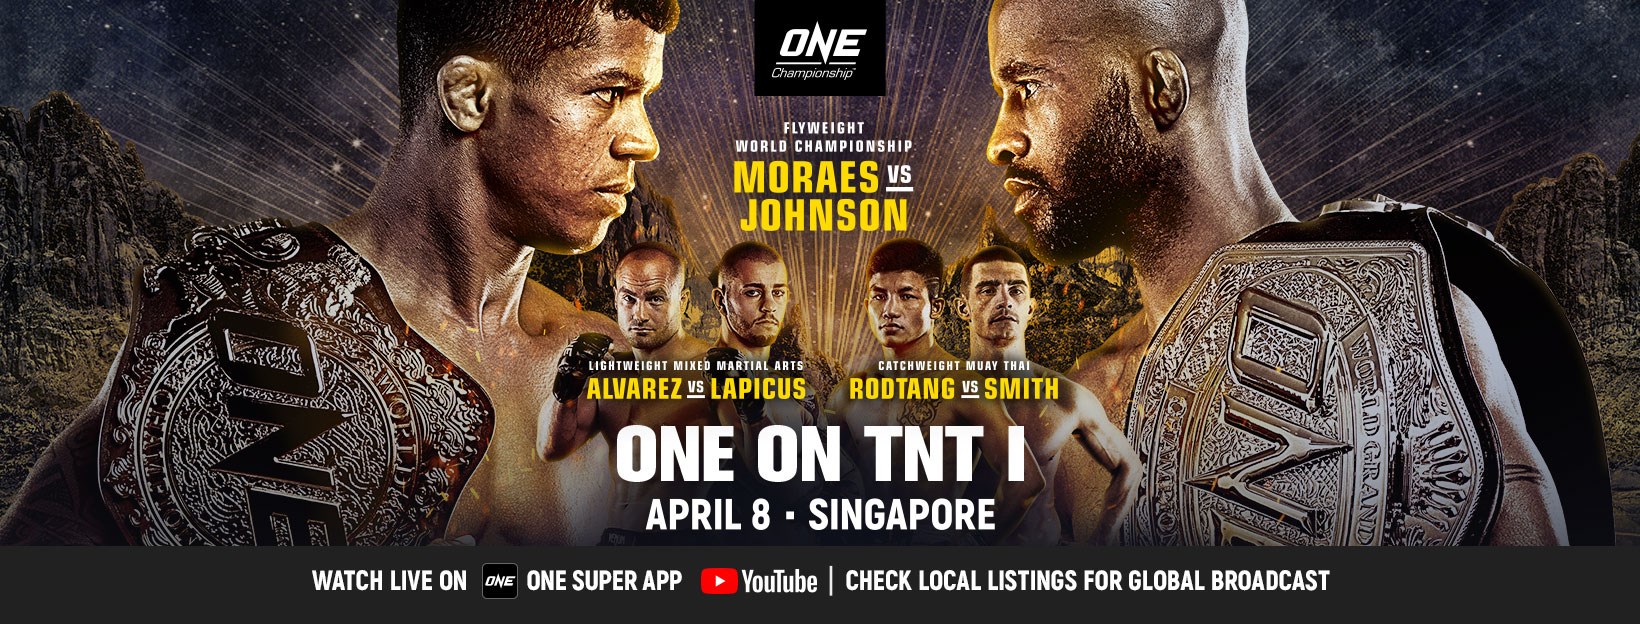 Moraes vs Johnson